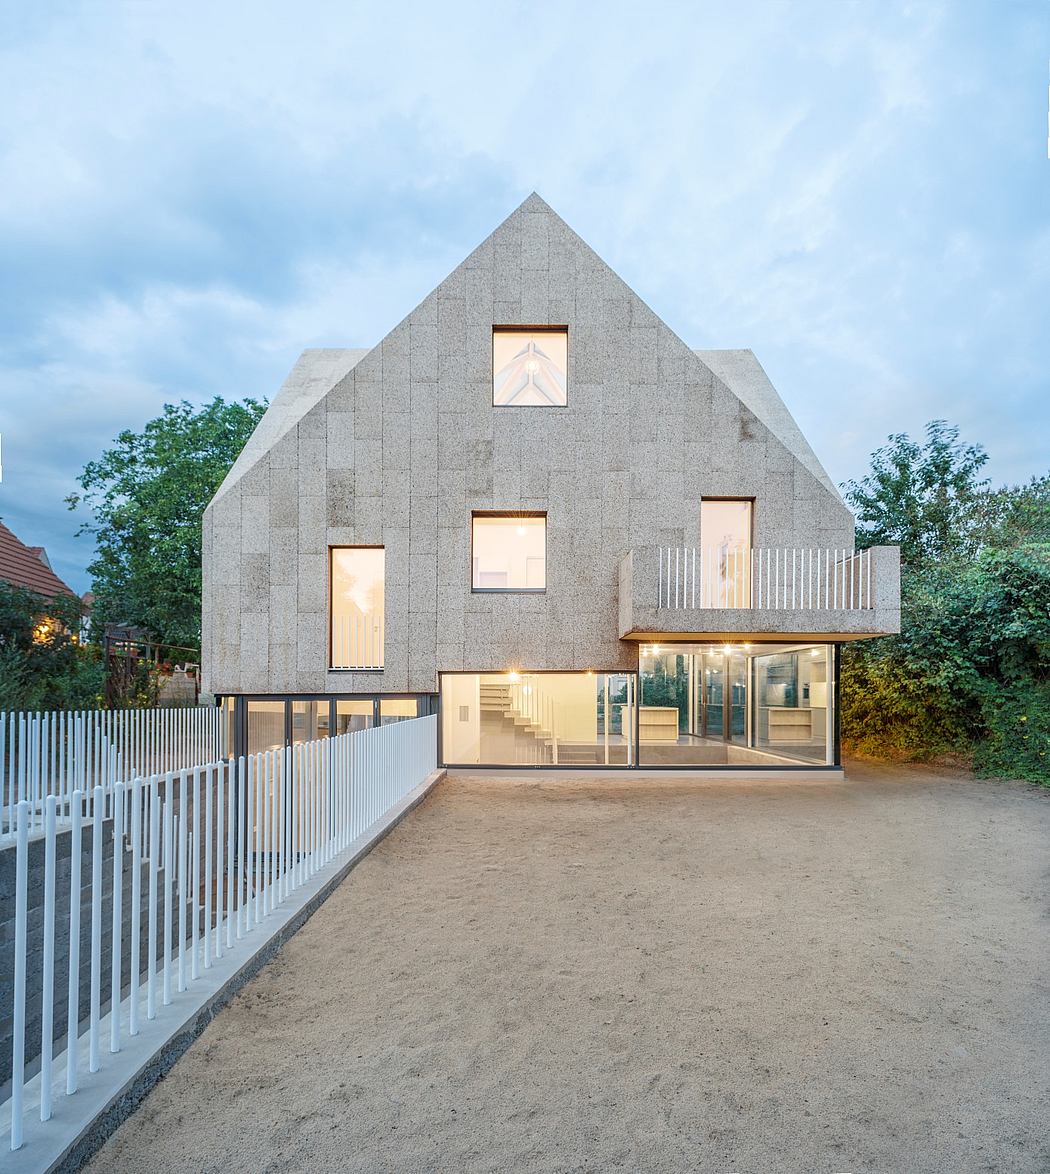 Corkscrew House by Rundzwei Architekten - 1